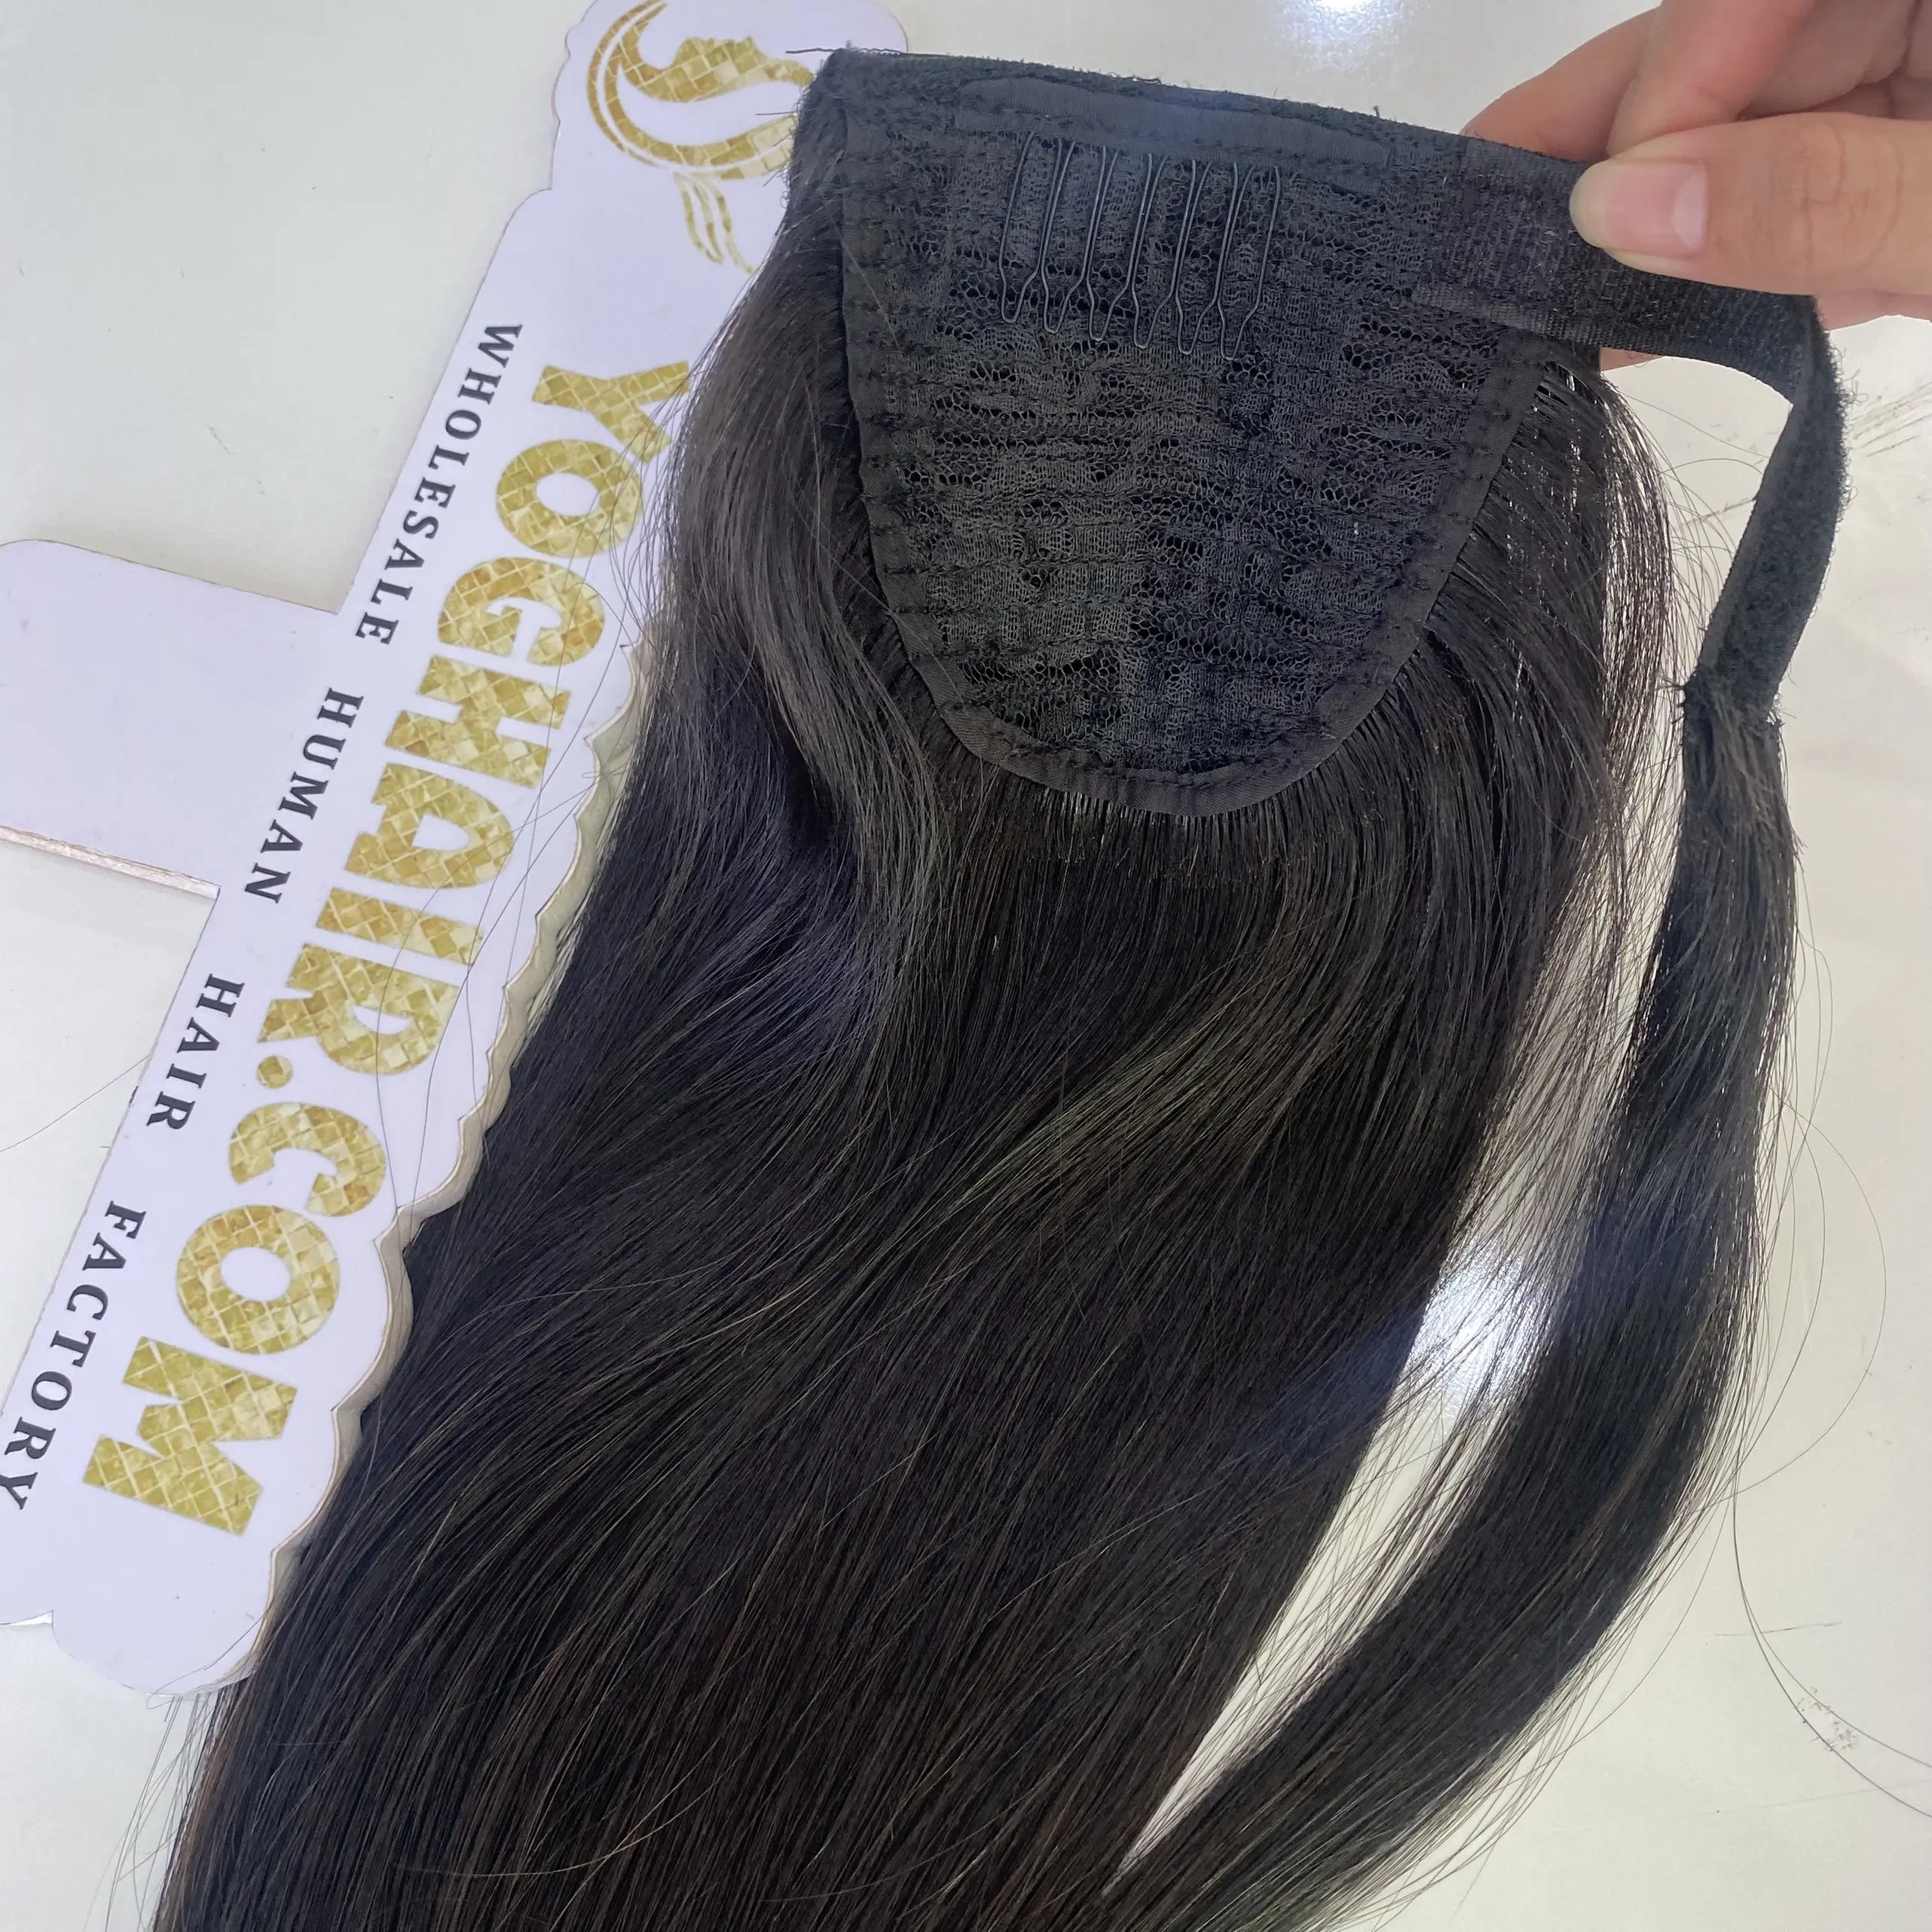 Thỏa thuận nóng nguyên tóc ponytails Việt tự nhiên nguyên tóc tất cả các loại 8 ''-40'' giá thấp nhanh chóng vận chuyển tùy chỉnh bao bì